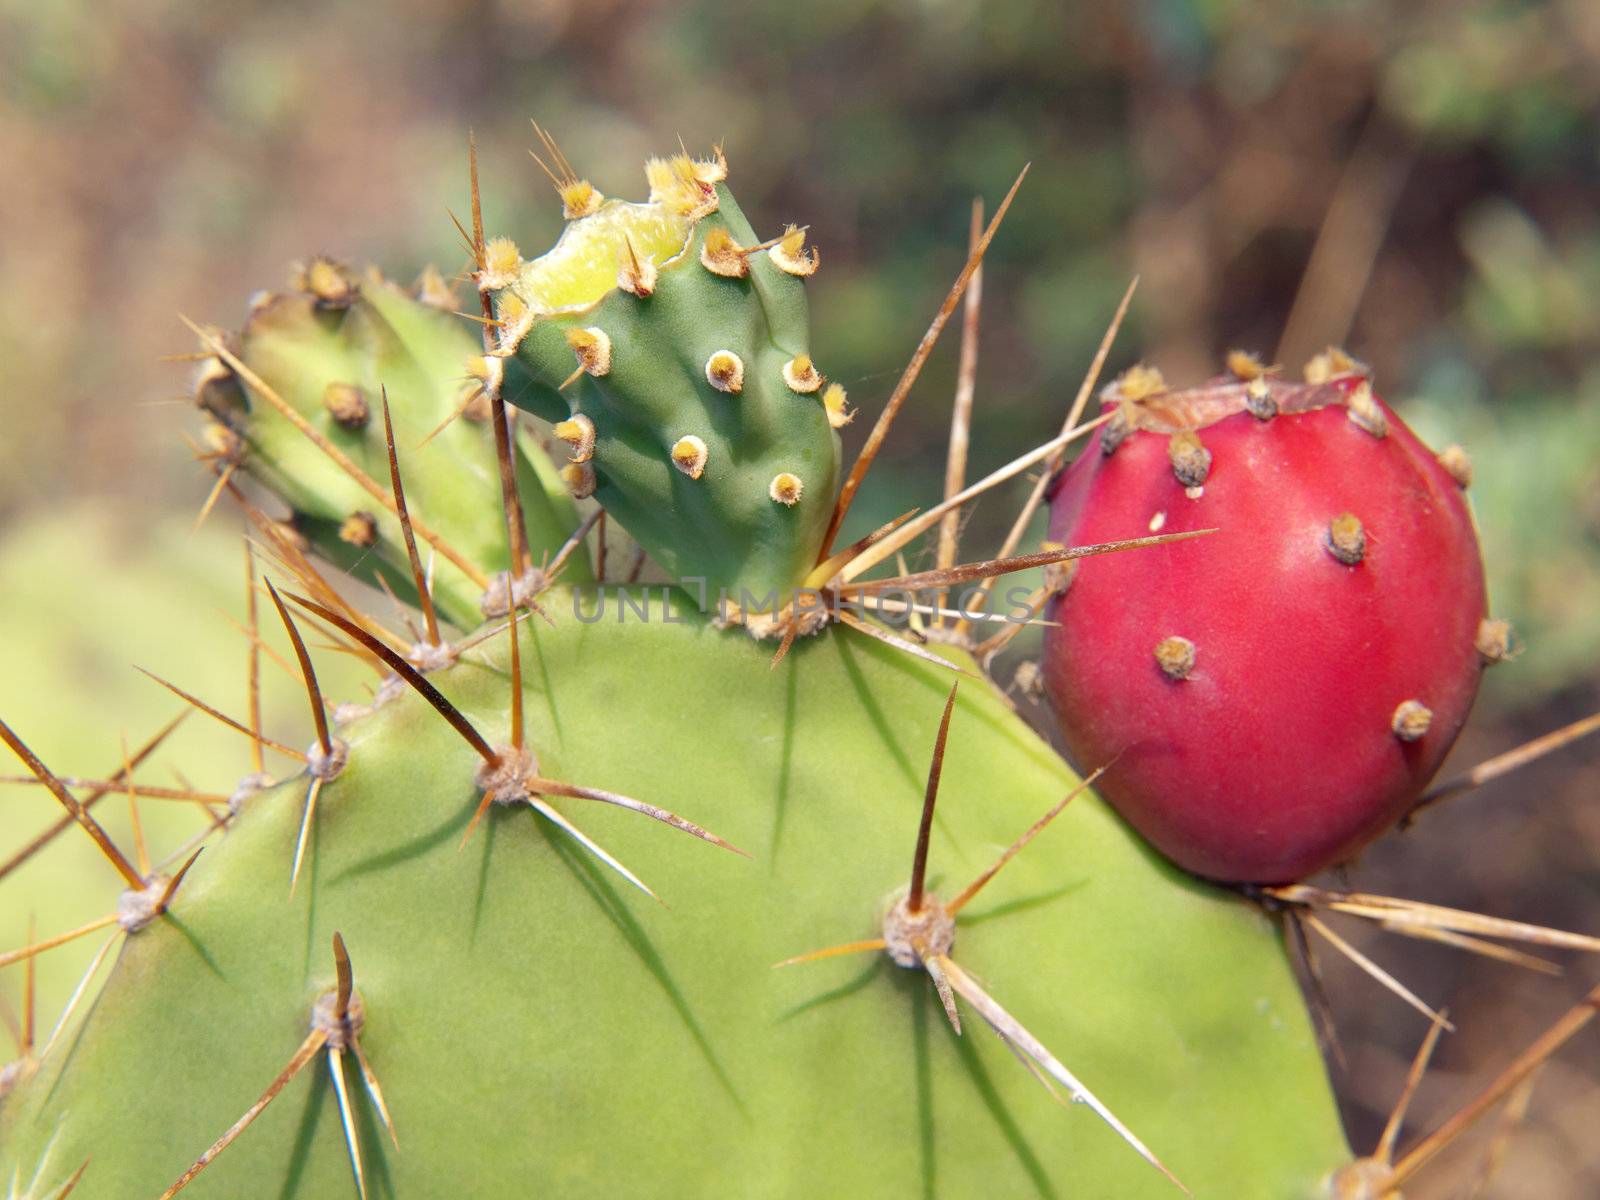 Closeup thorns of Opuntia cactus with fruit